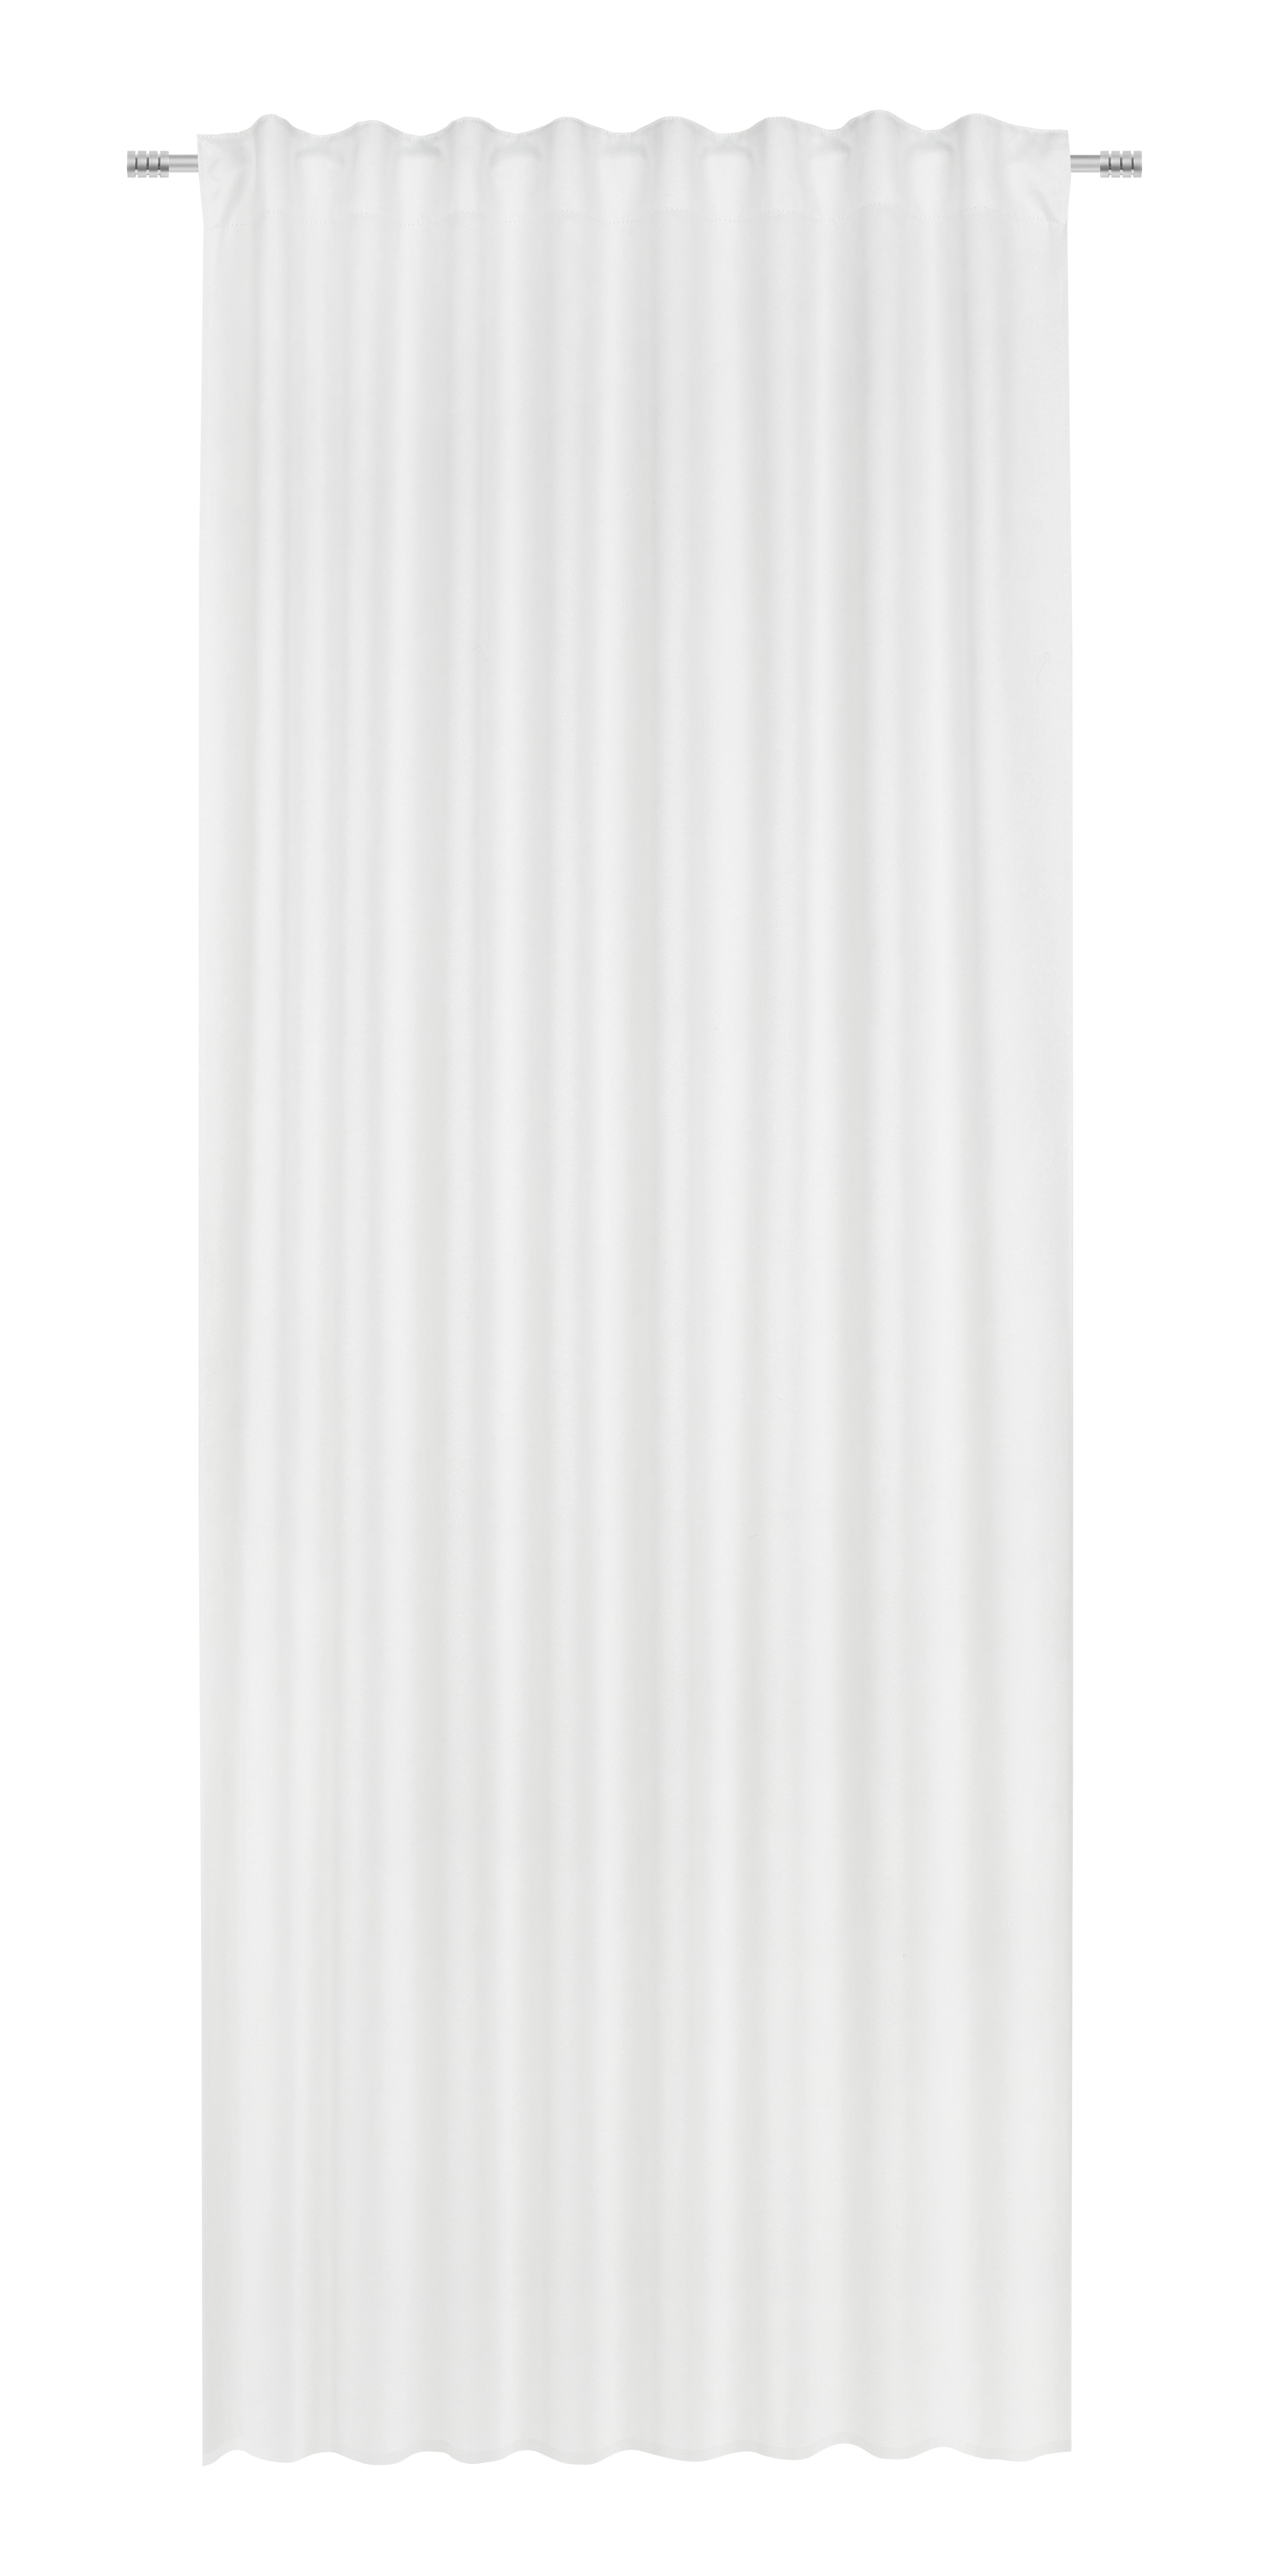 FERTIGVORHANG blickdicht 135/255 cm   - Creme, Basics, Textil (135/255cm) - Dieter Knoll